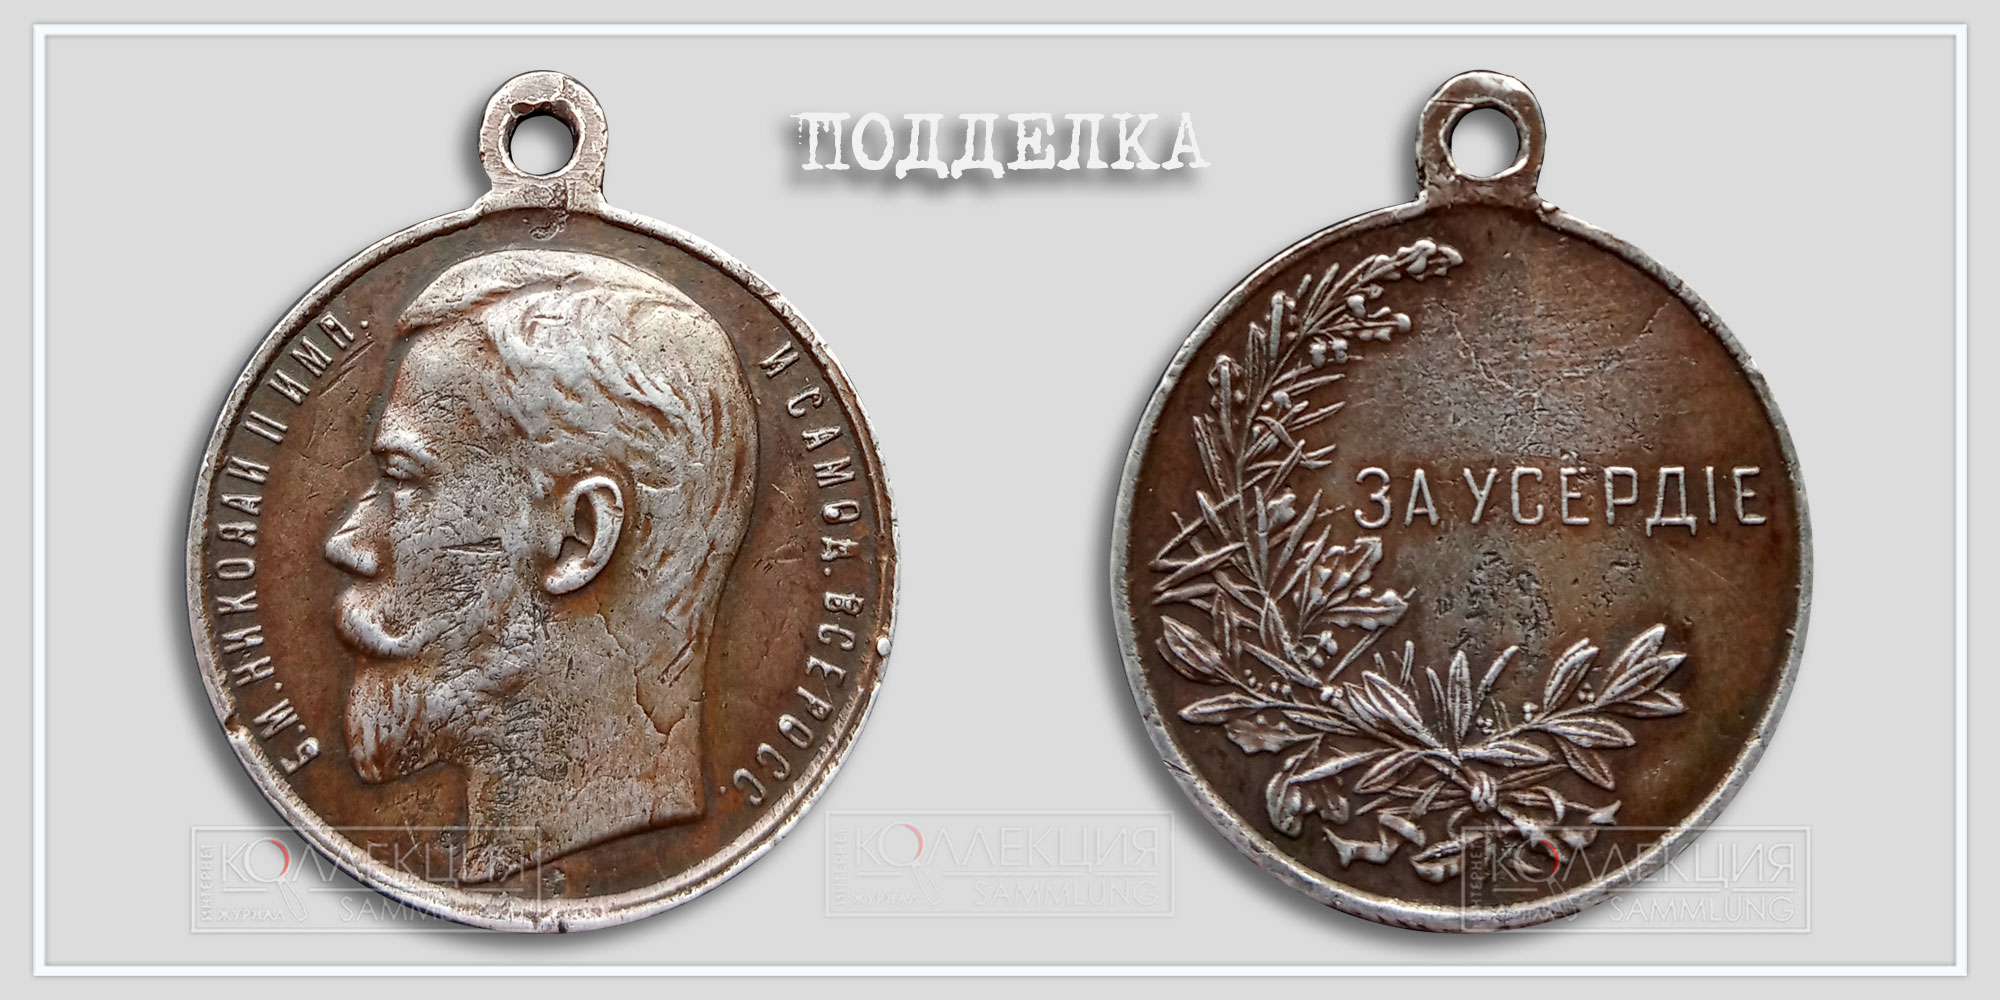 Медаль "За усердную службу" Николай II. Копия